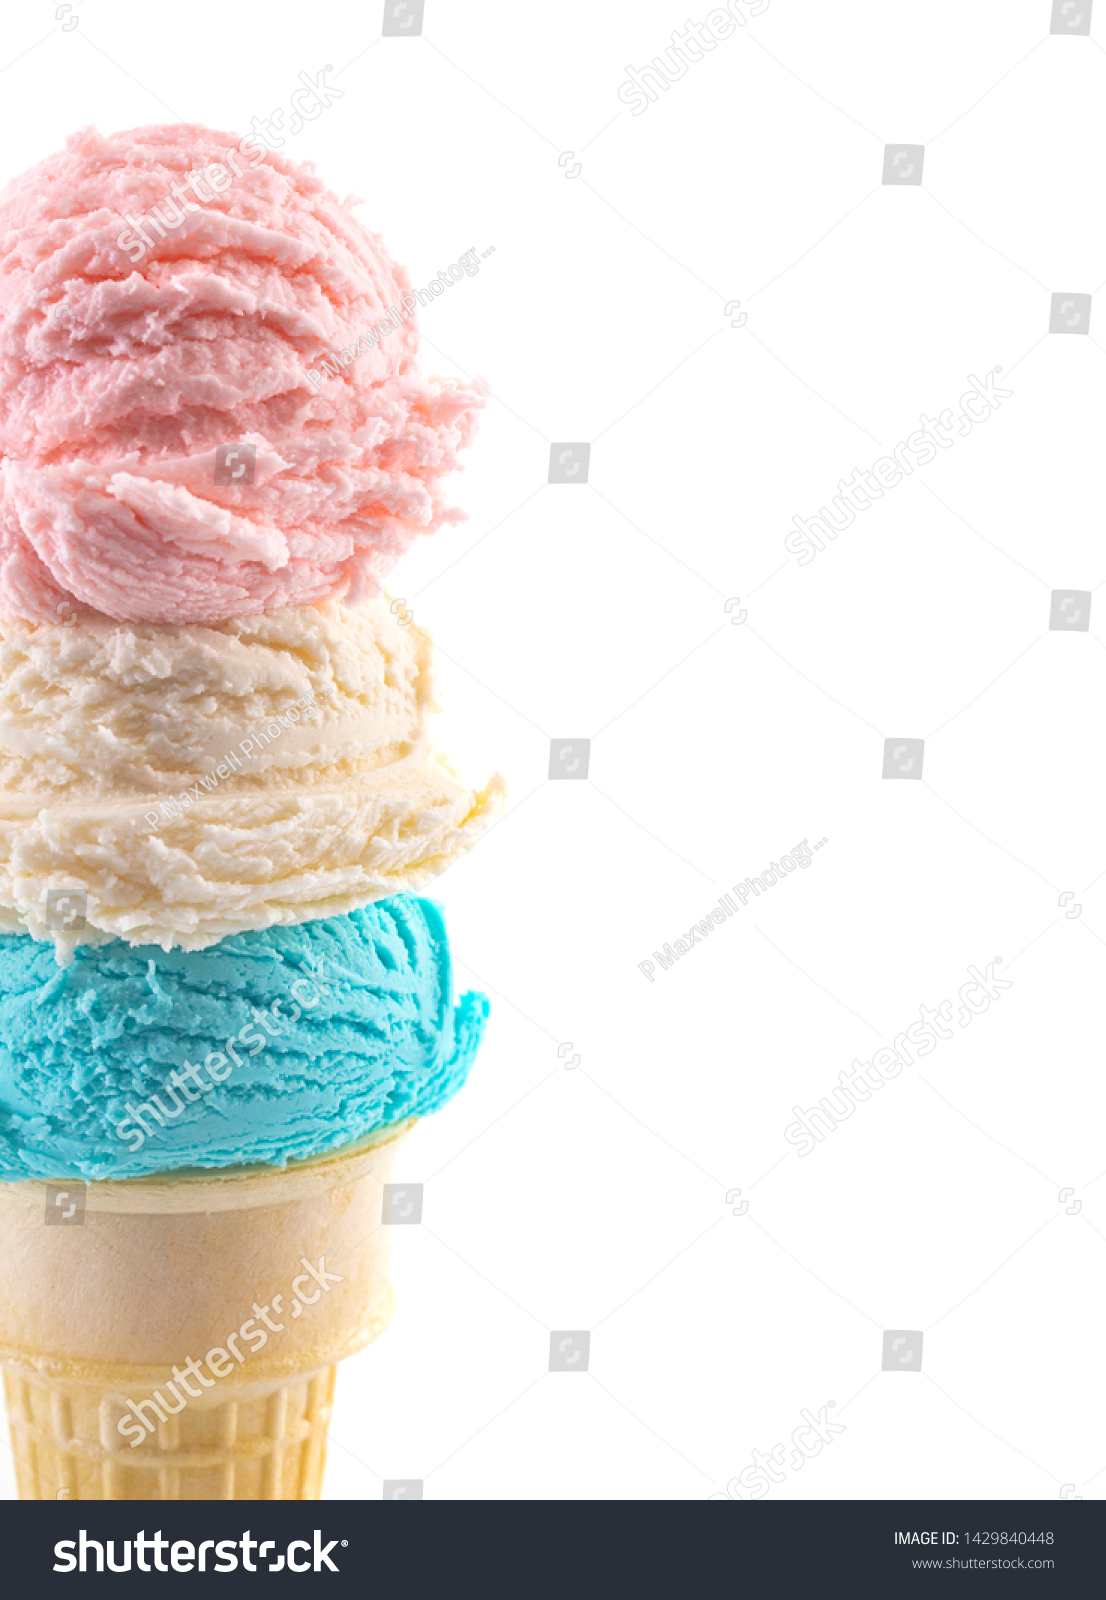 blue scoop ice cream